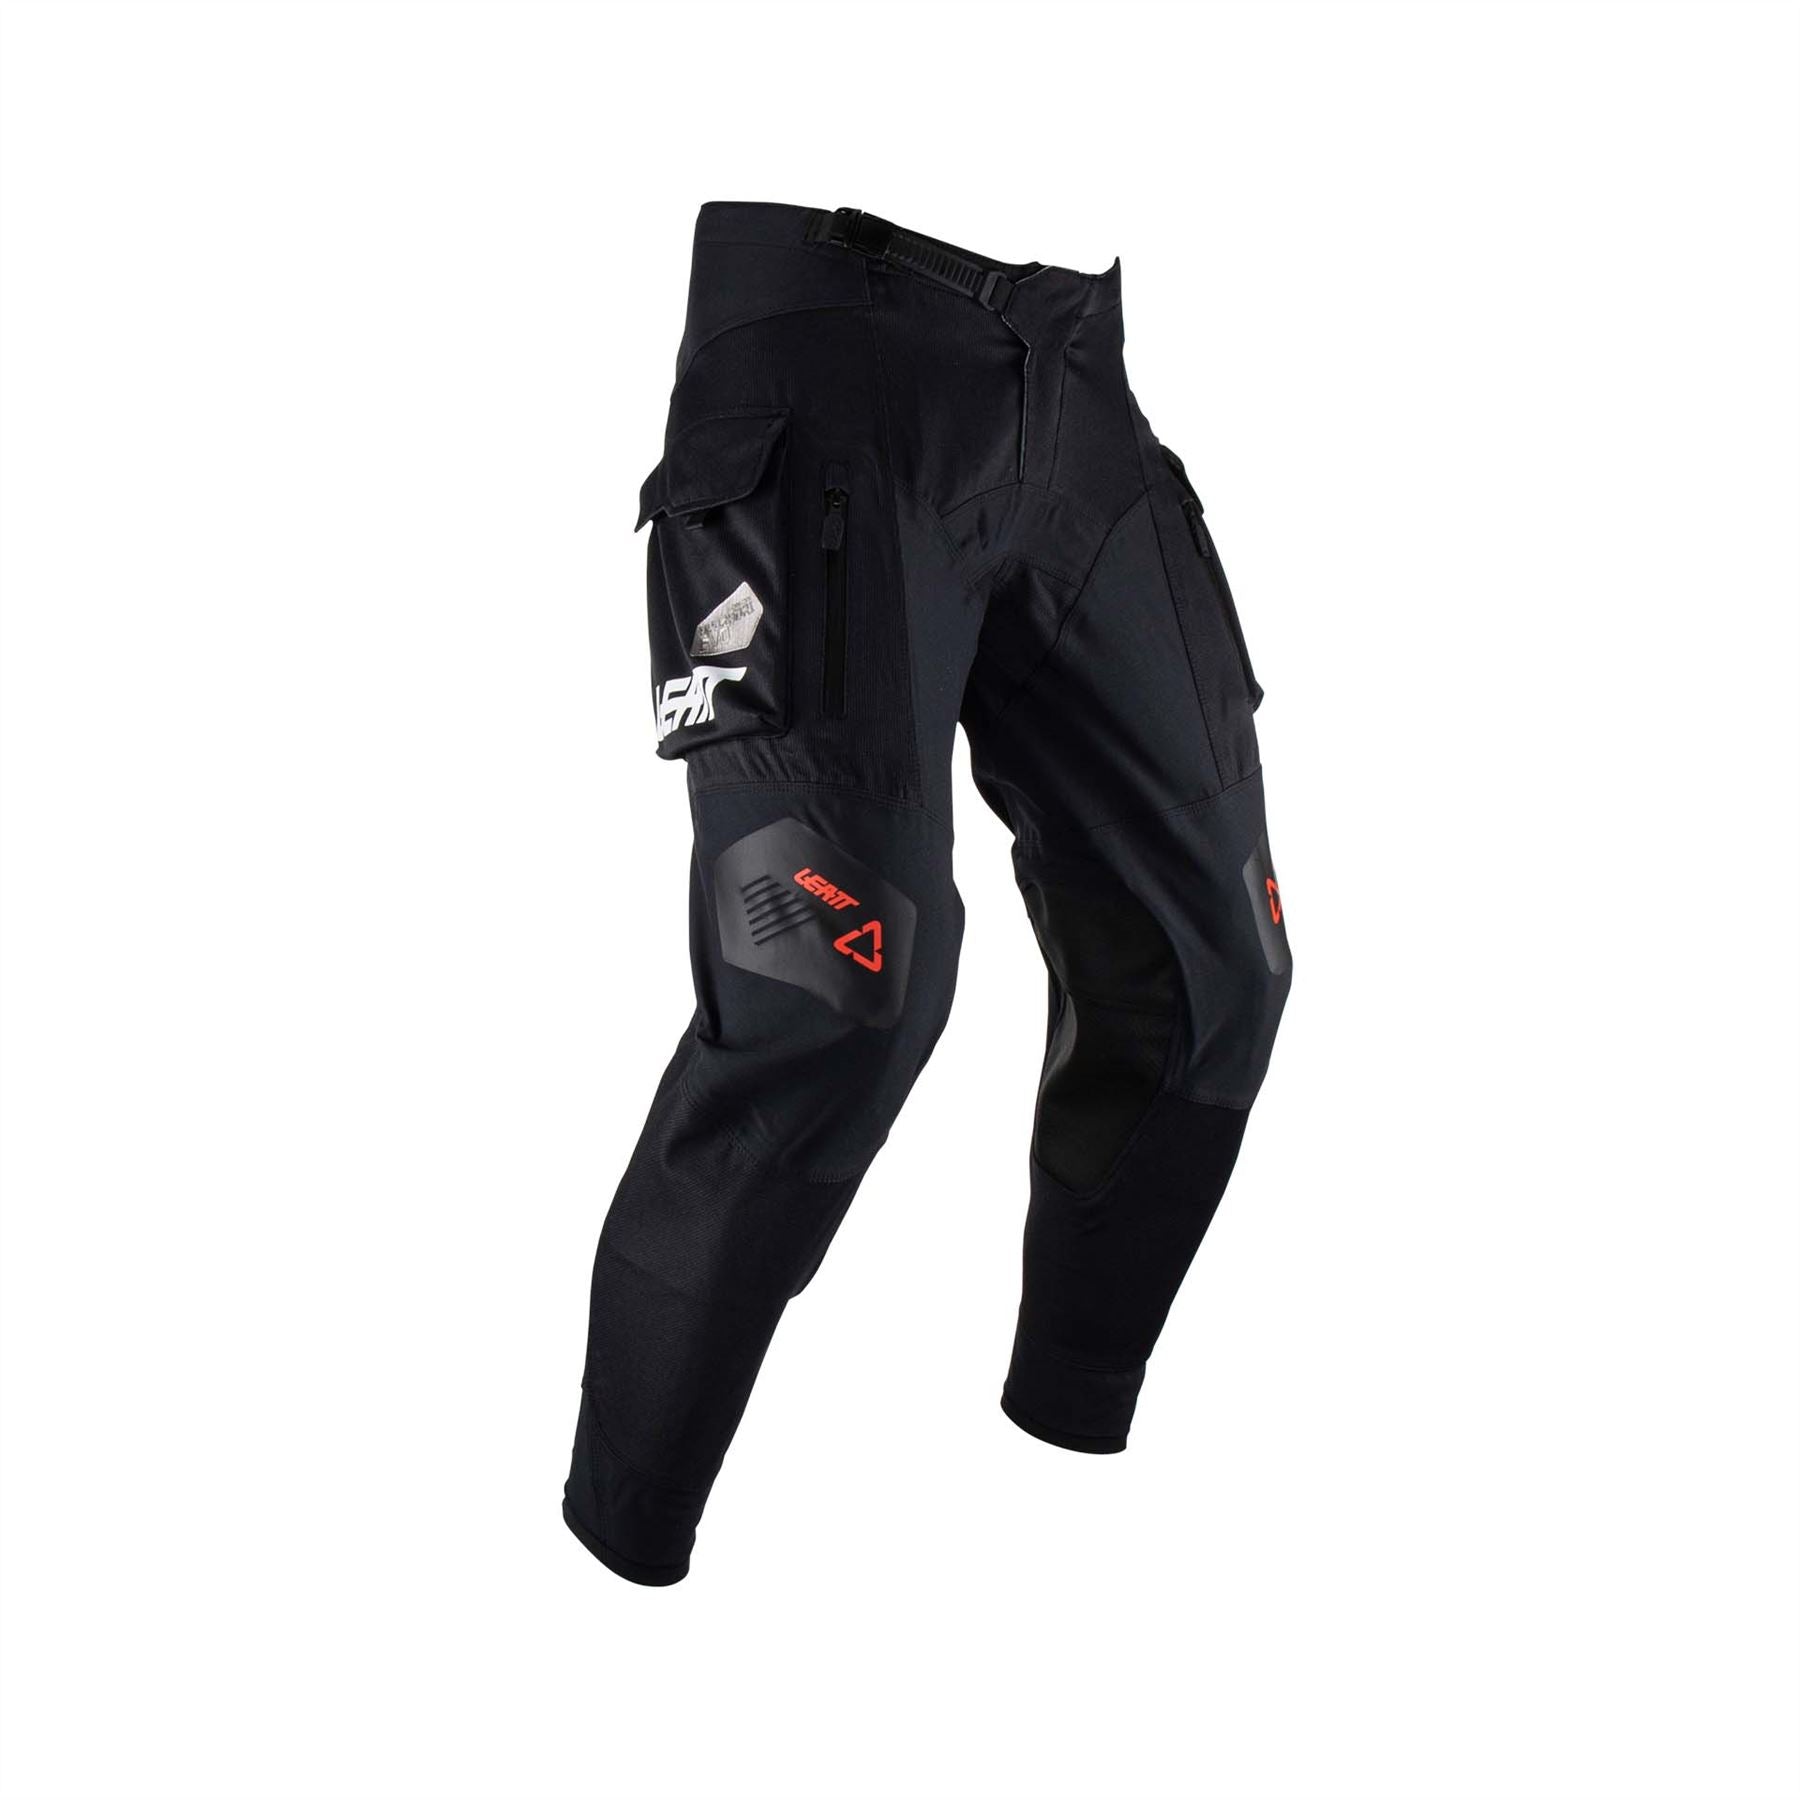 Leatt Pants 4.5 Hydradri Black